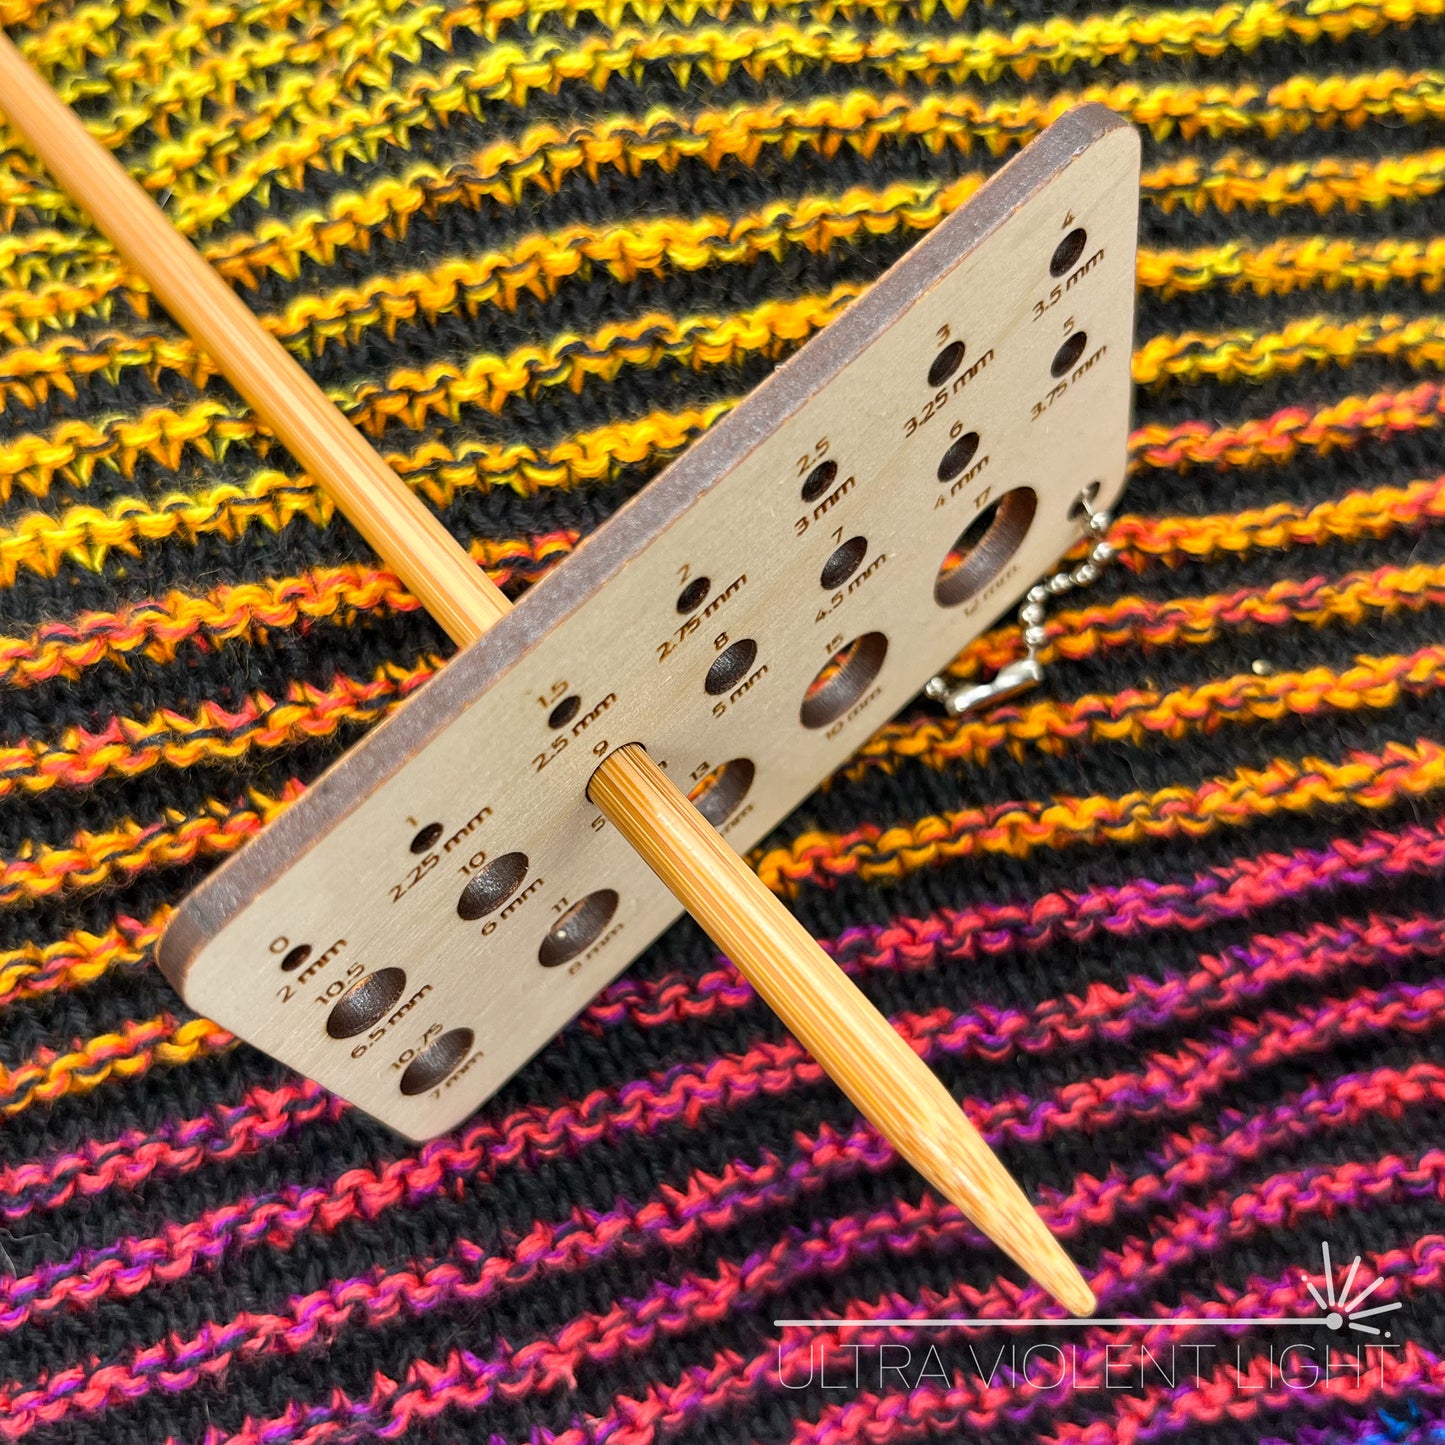 Credit card-sized knitting needle sizer